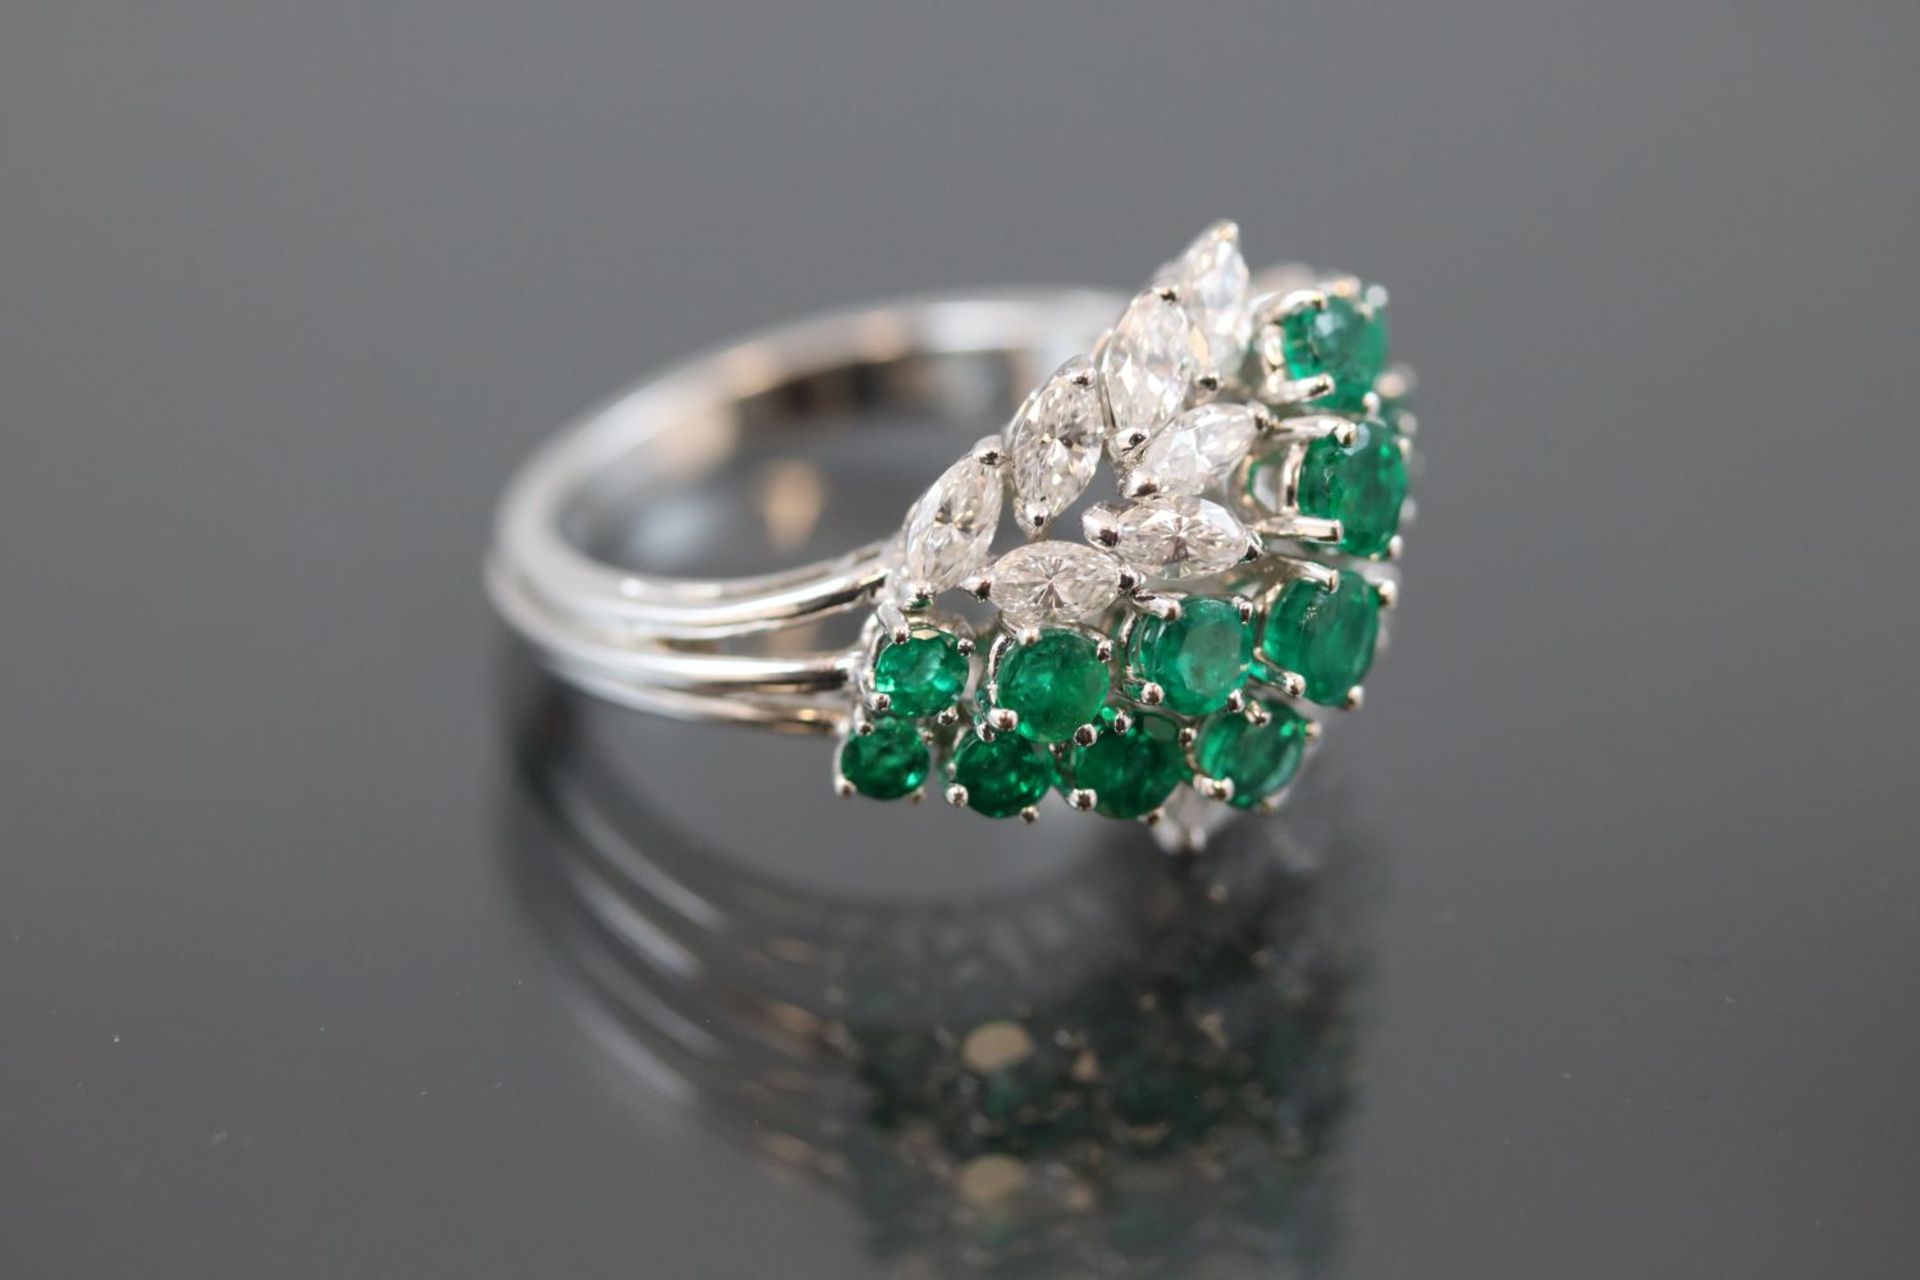 Smaragd-Diamant-Ring, 750 Weißgold7,1 Gramm 14 Diamantnavetten, 1,25 ct., tw/if. Ringgröße: 5416 - Bild 2 aus 3